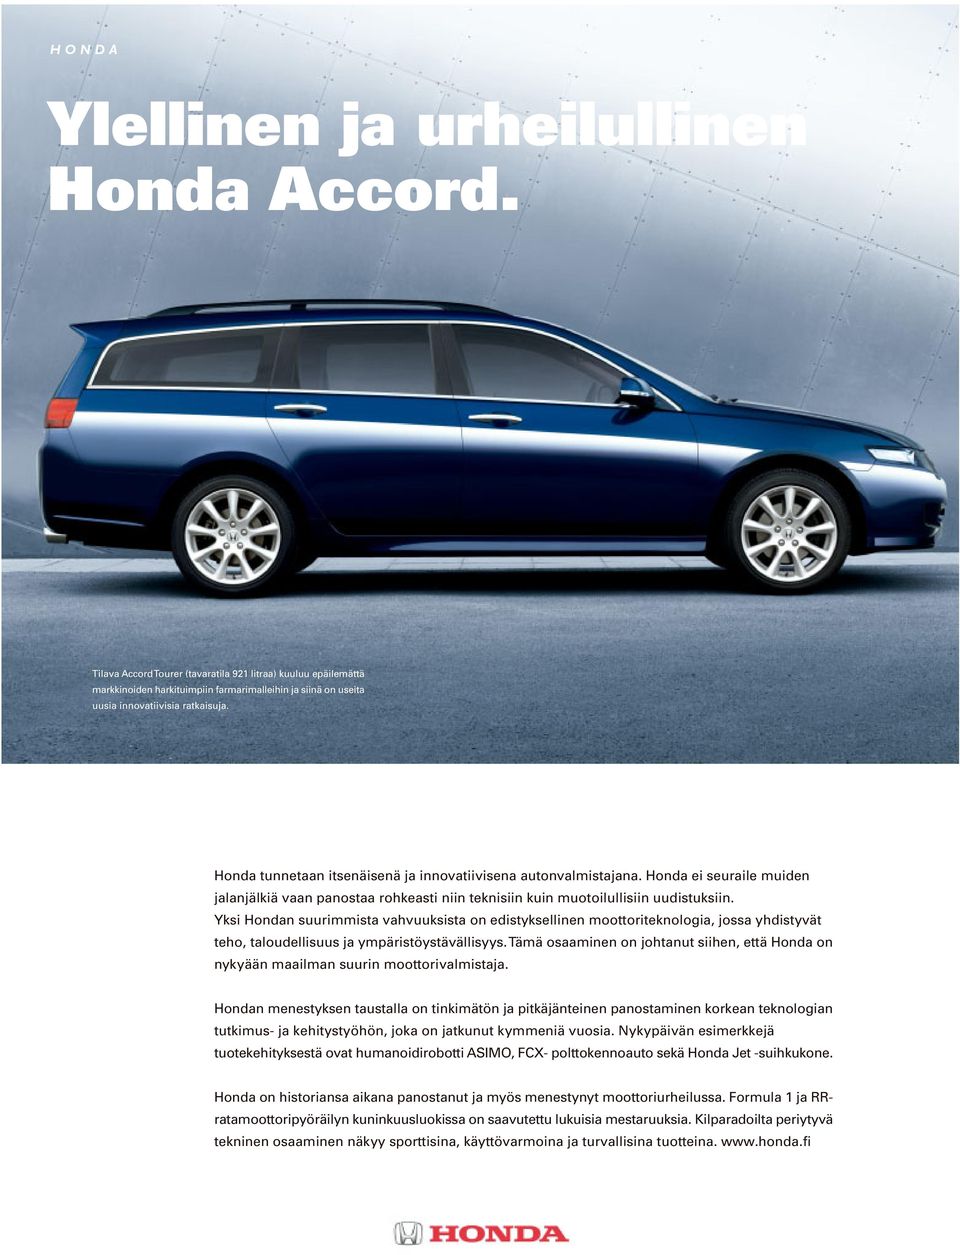 Honda tunnetaan itsenäisenä ja innovatiivisena autonvalmistajana. Honda ei seuraile muiden jalanjälkiä vaan panostaa rohkeasti niin teknisiin kuin muotoilullisiin uudistuksiin.